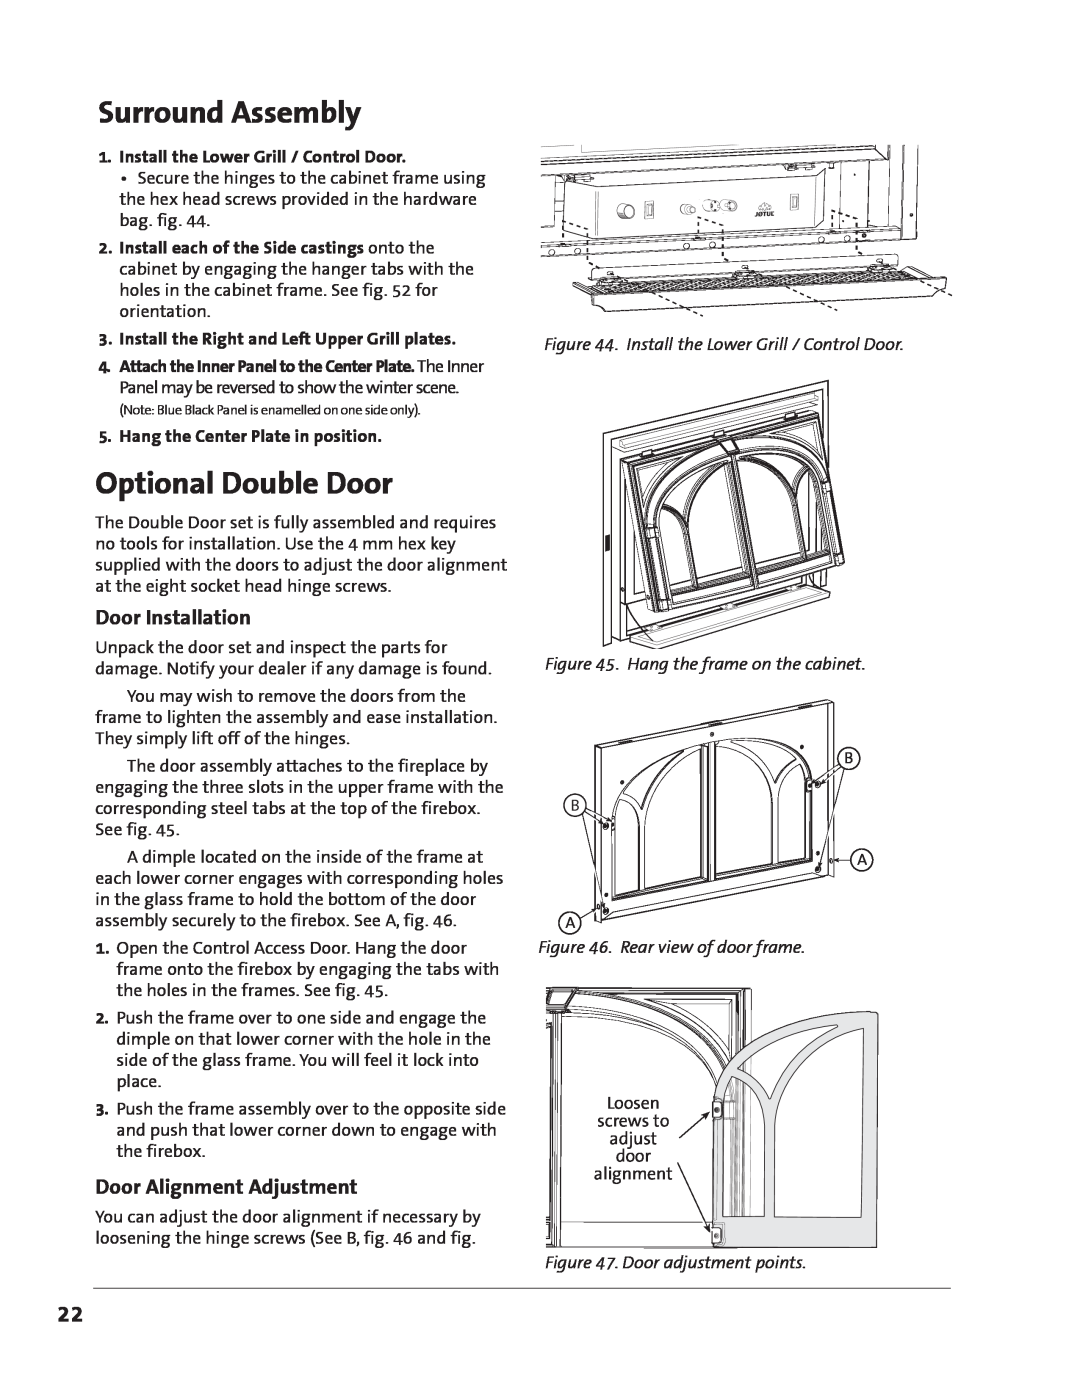 Jotul GZ 550 DV II manual Surround Assembly, Optional Double Door, Door Installation, Door Alignment Adjustment 